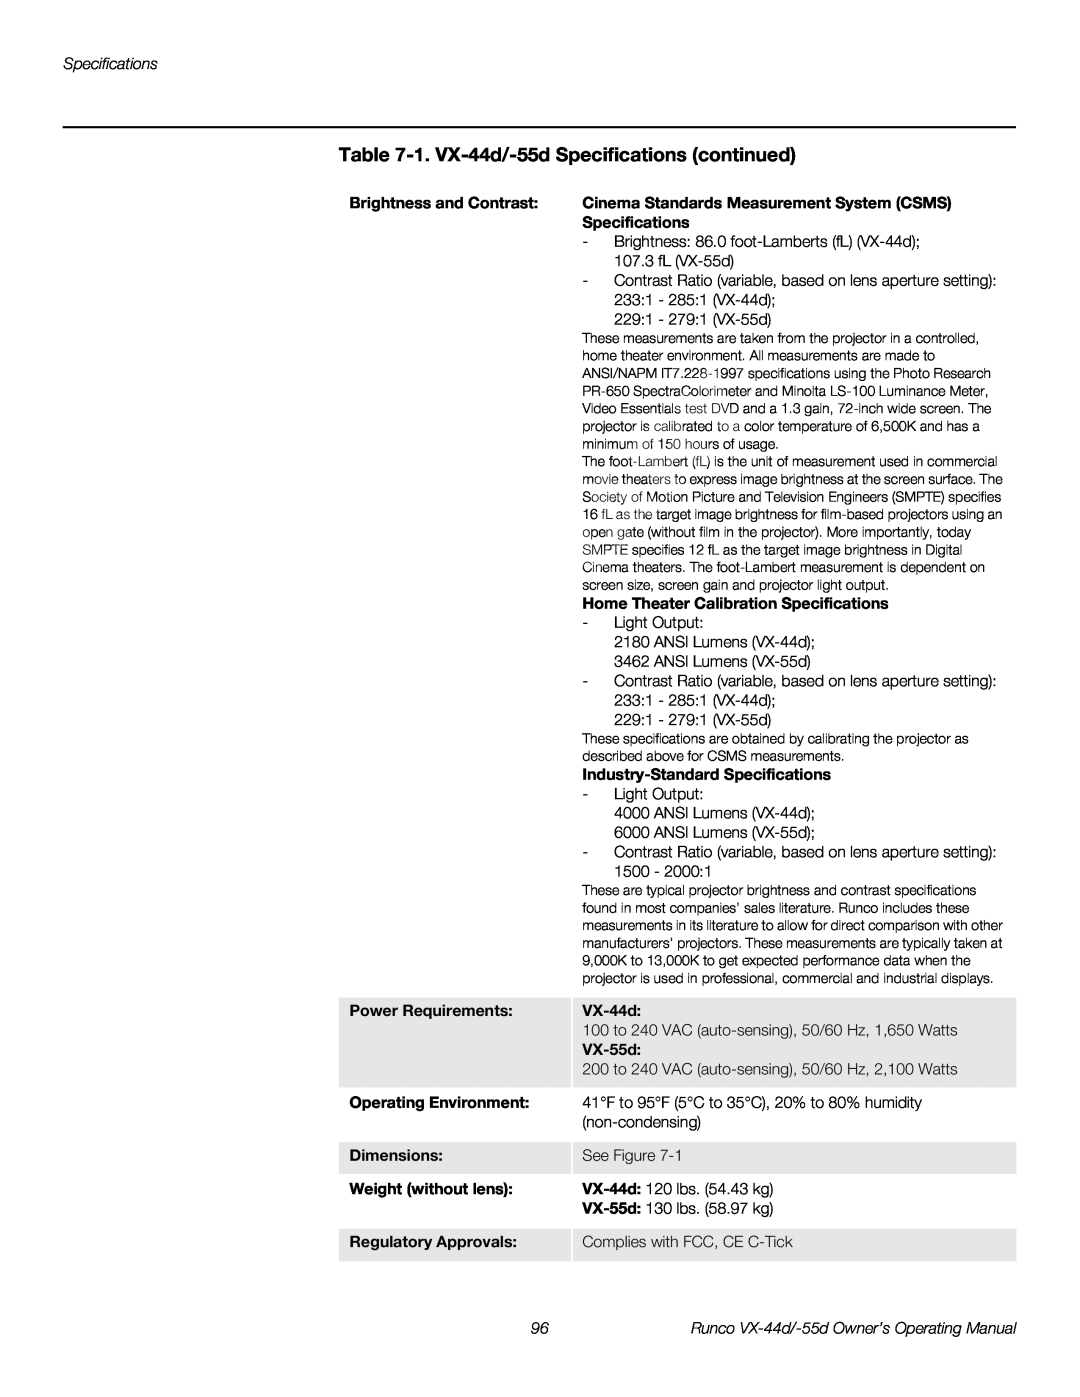 Runco 1080p manual 1. VX-44d/-55d Specifications continued 